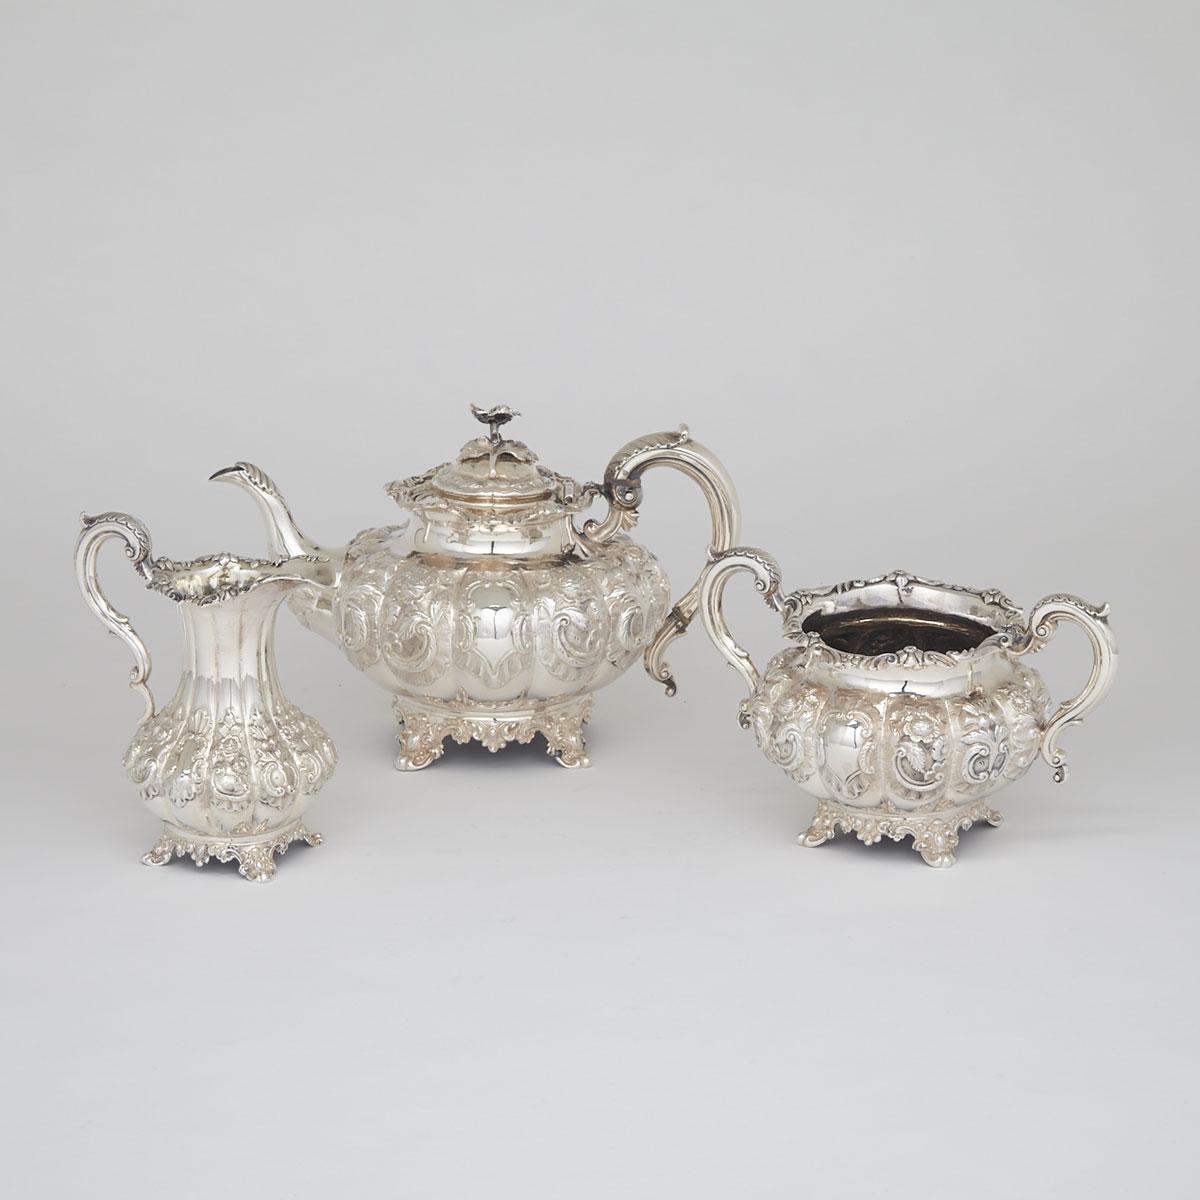 Victorian Silver Tea Service, William Hunter, London, 1849